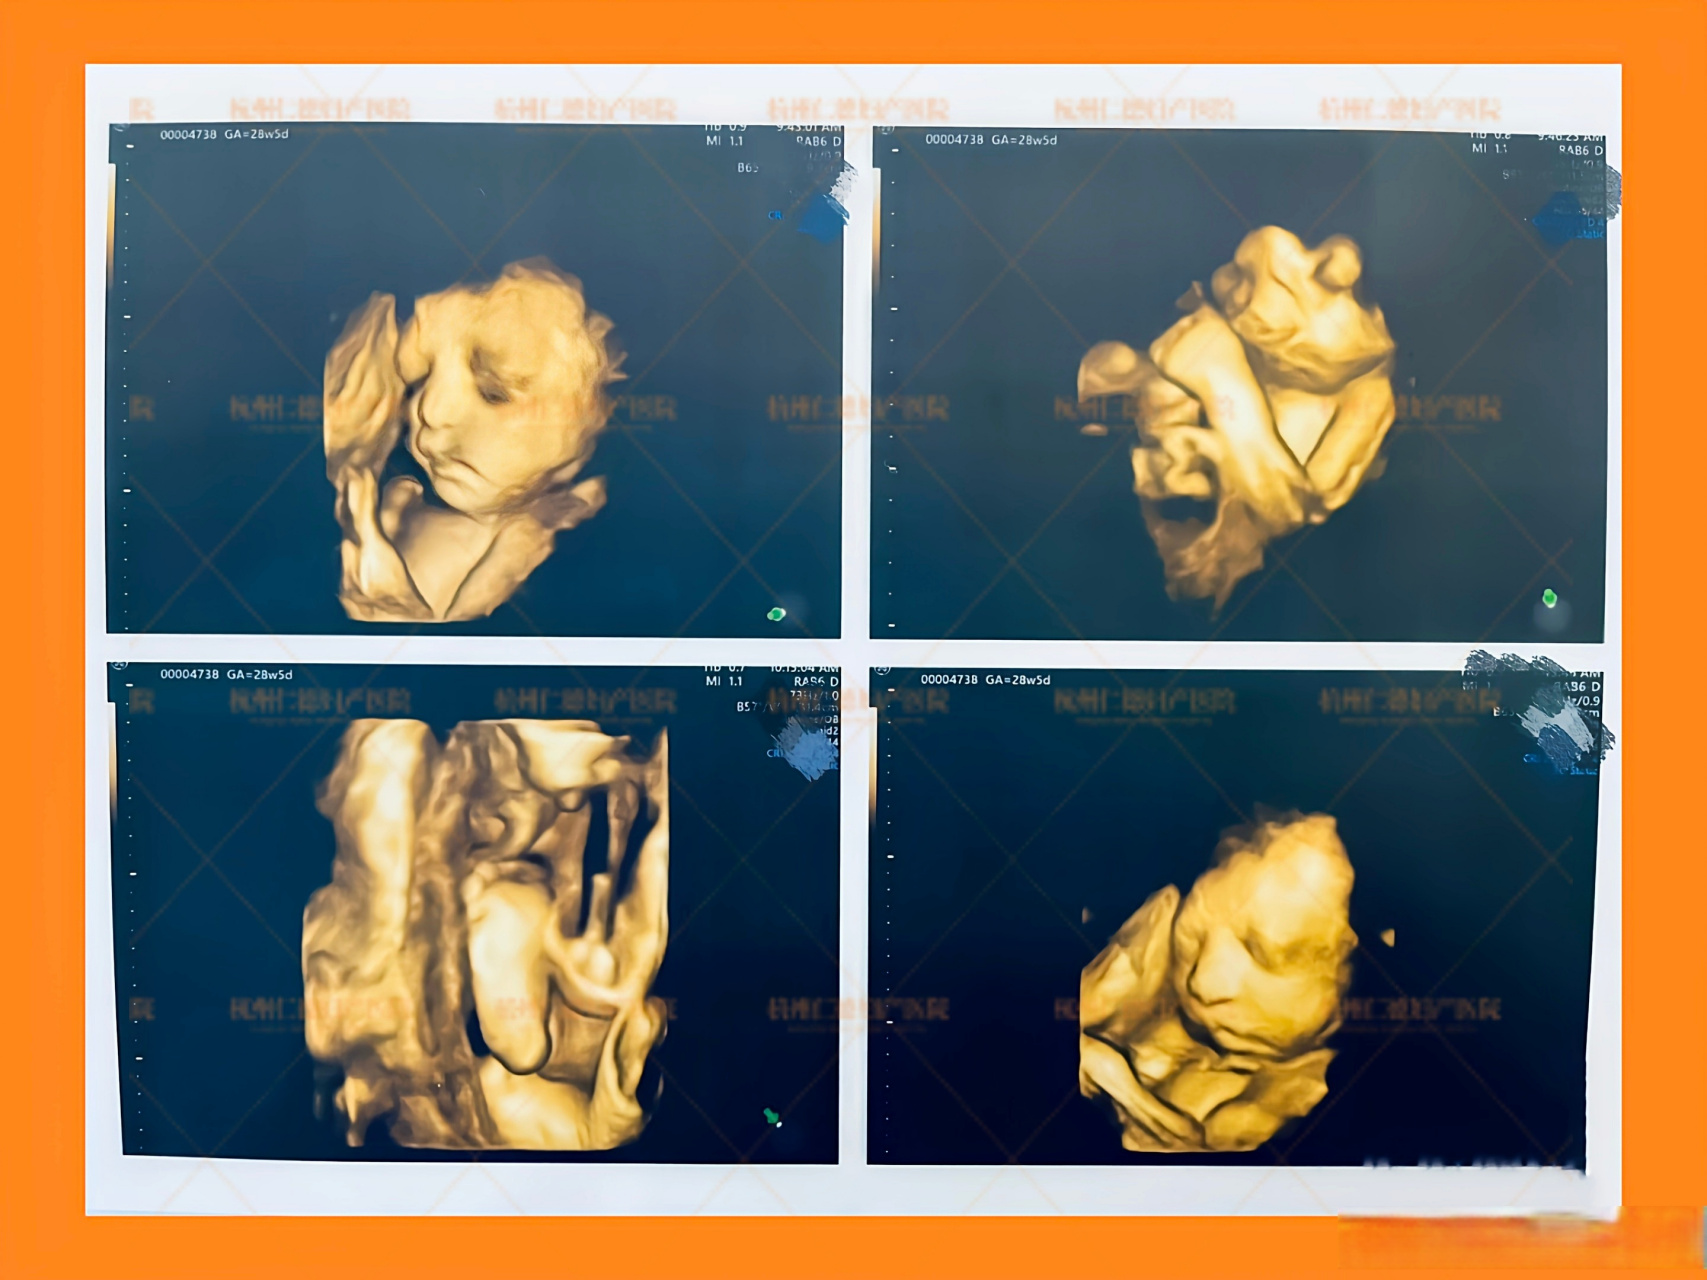 怀孕28周胎儿图片图片